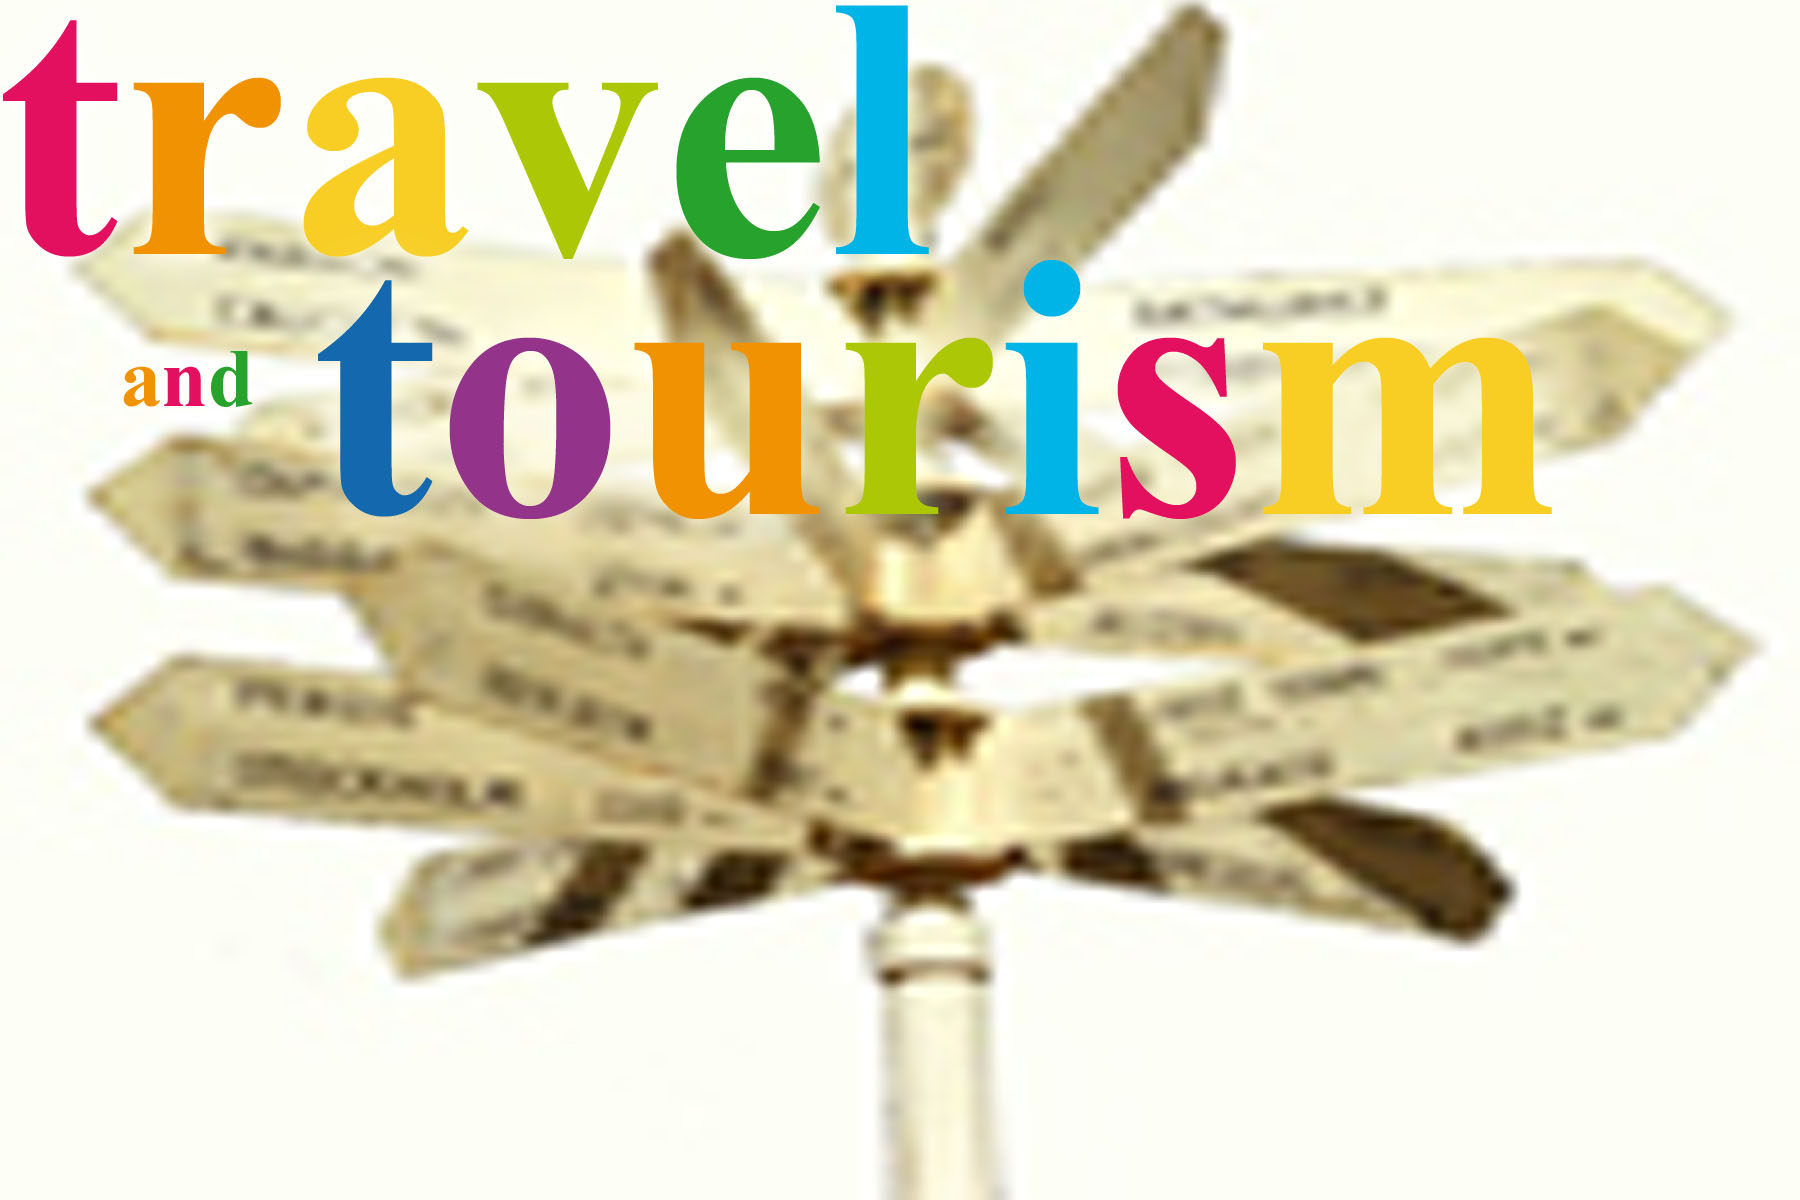 Ras Al Khaimah National Travel Agency